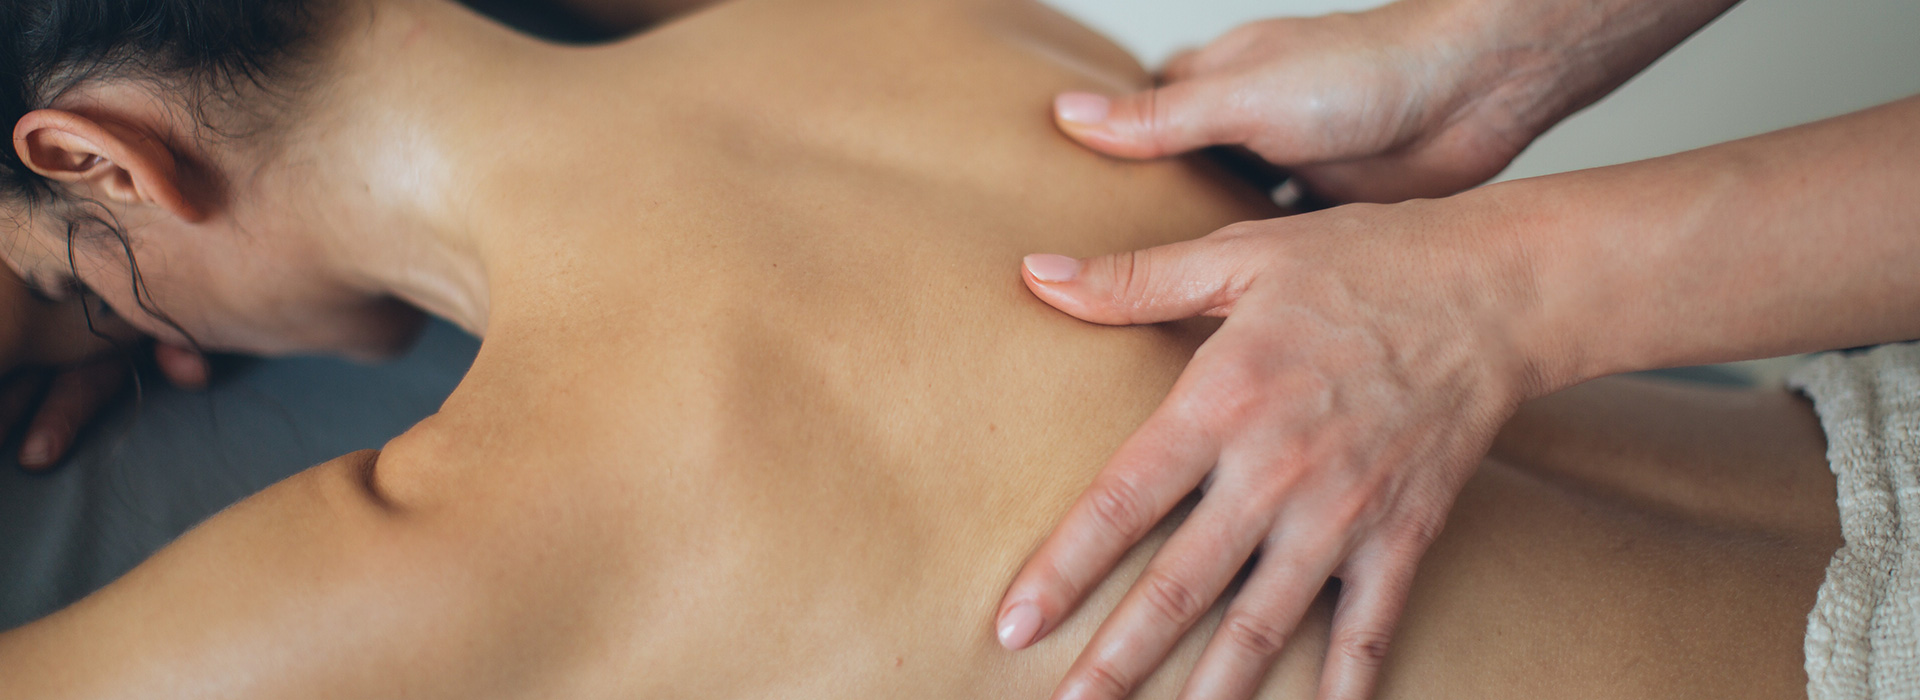 back massage on woman